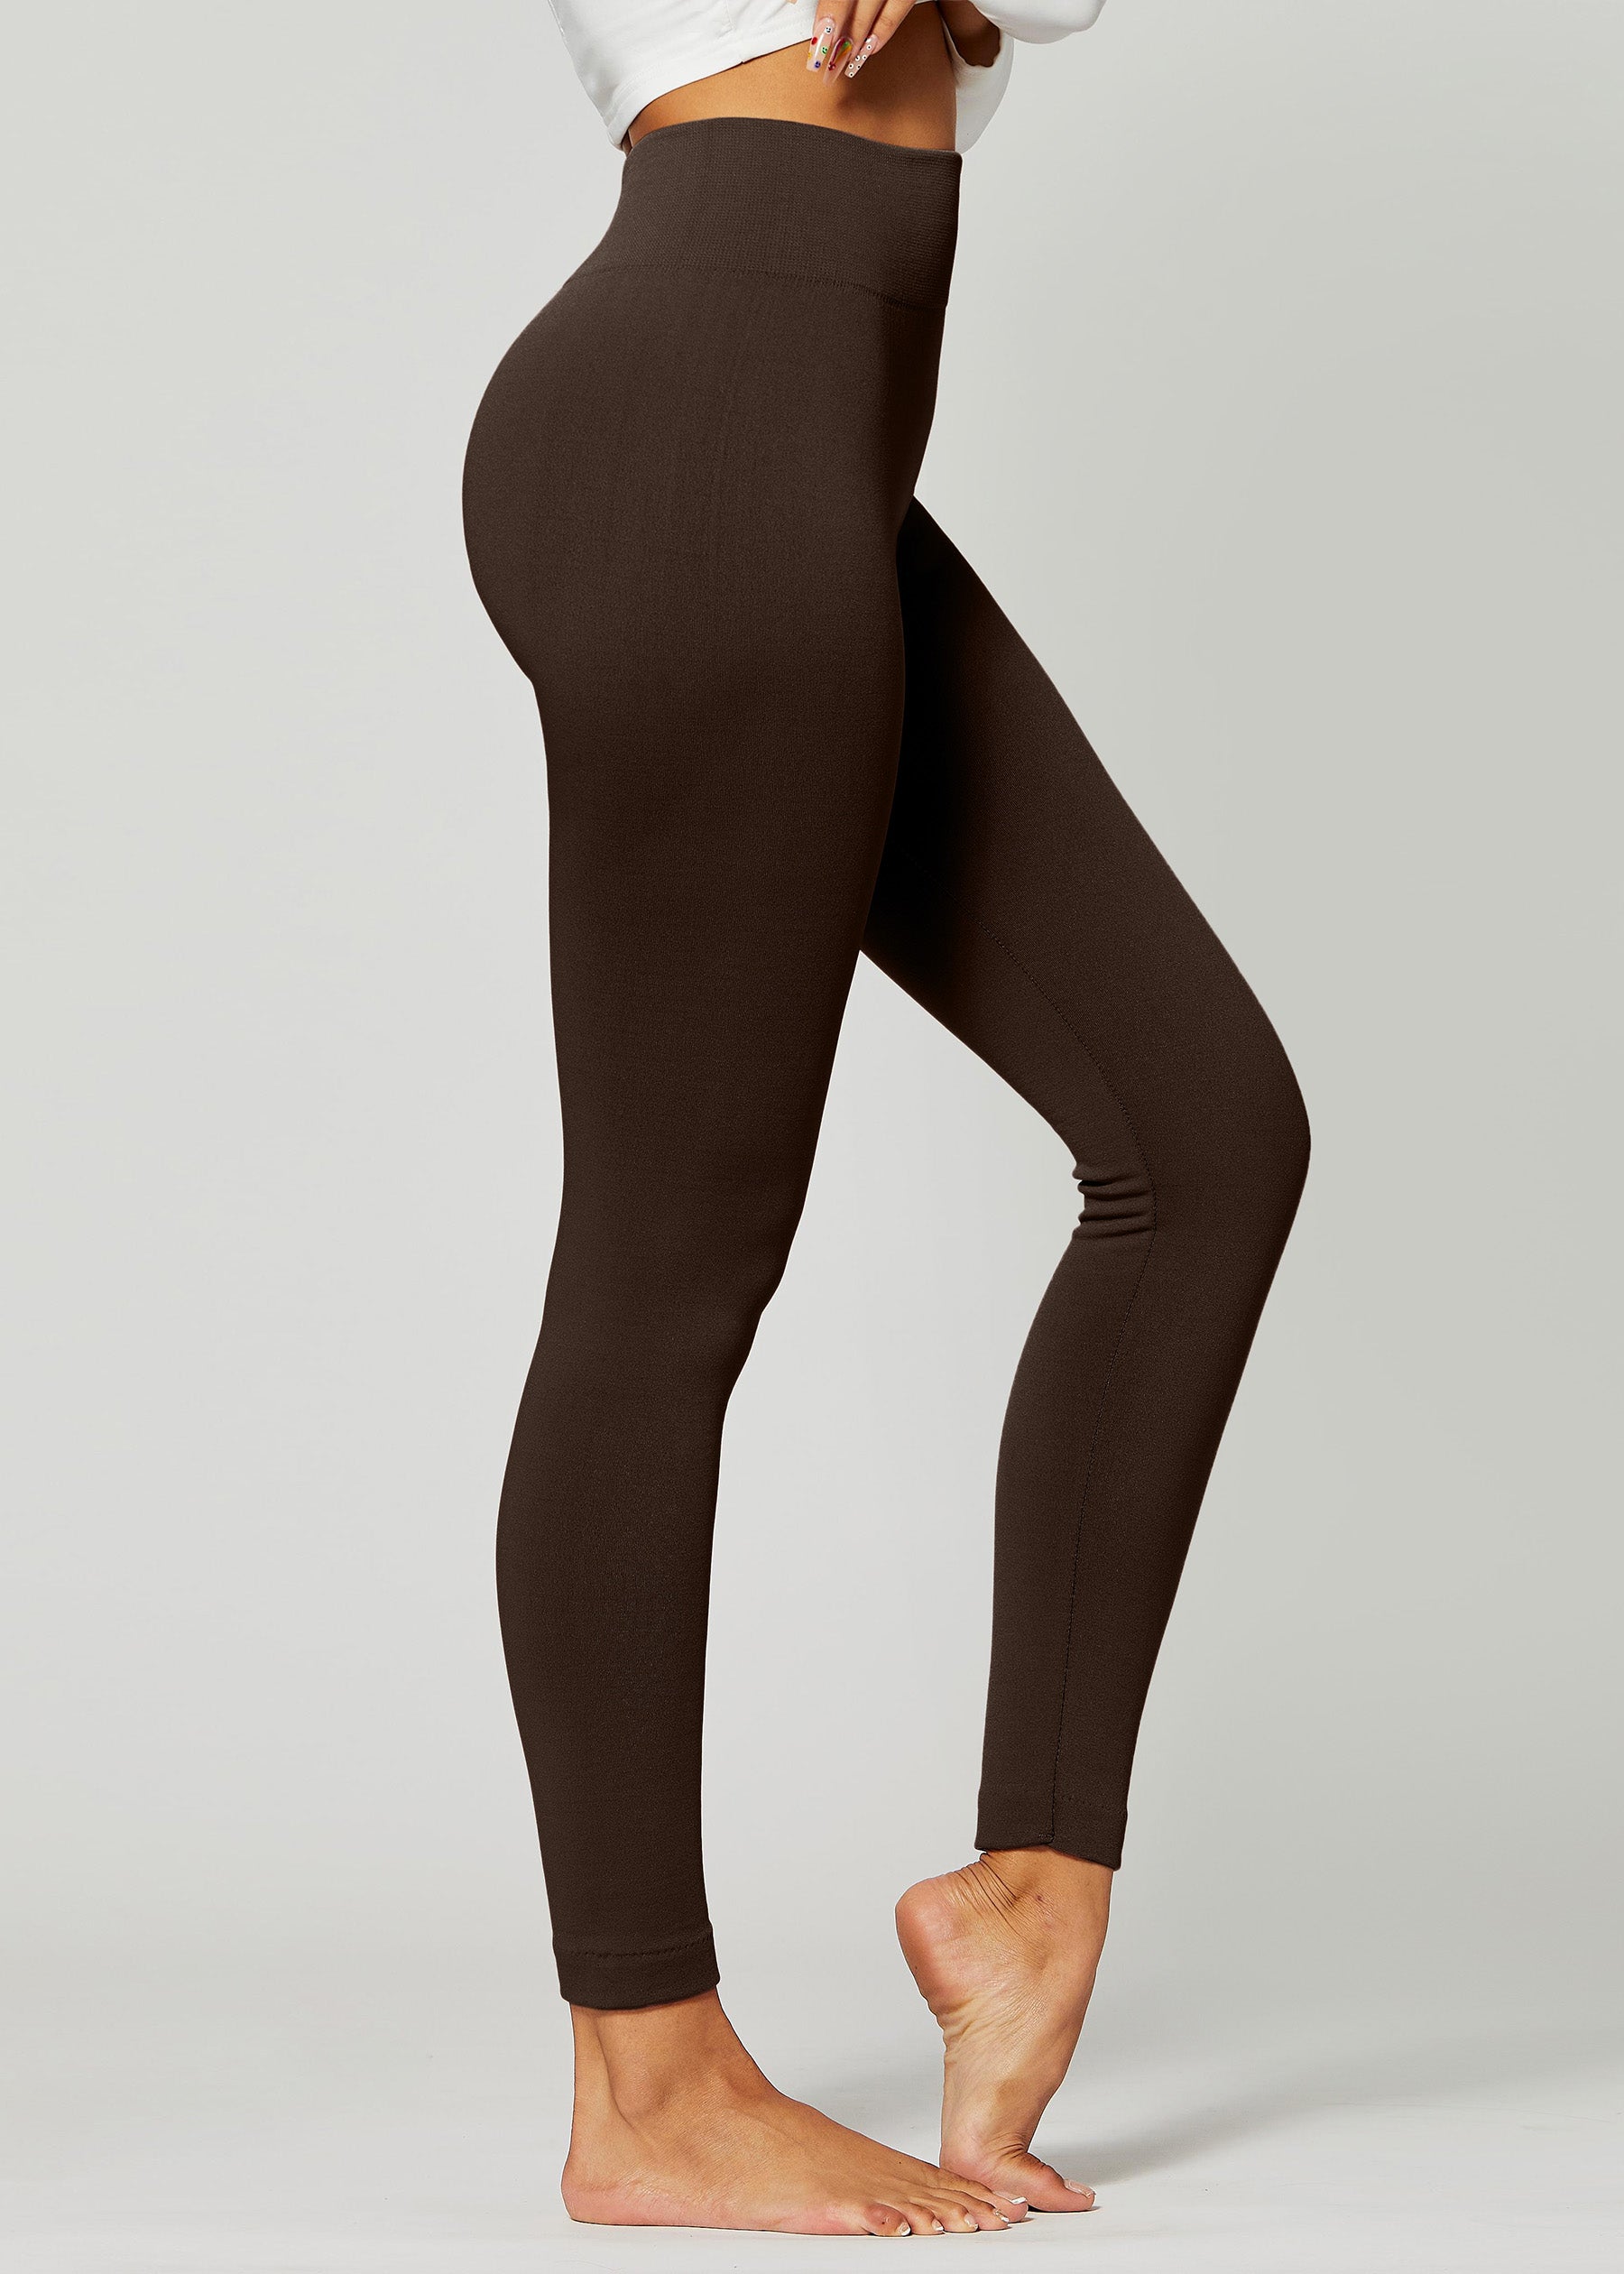 Conceited Velour Velvet Leggings for Women  Pantyhose fashion, Velvet  leggings, Women's leggings